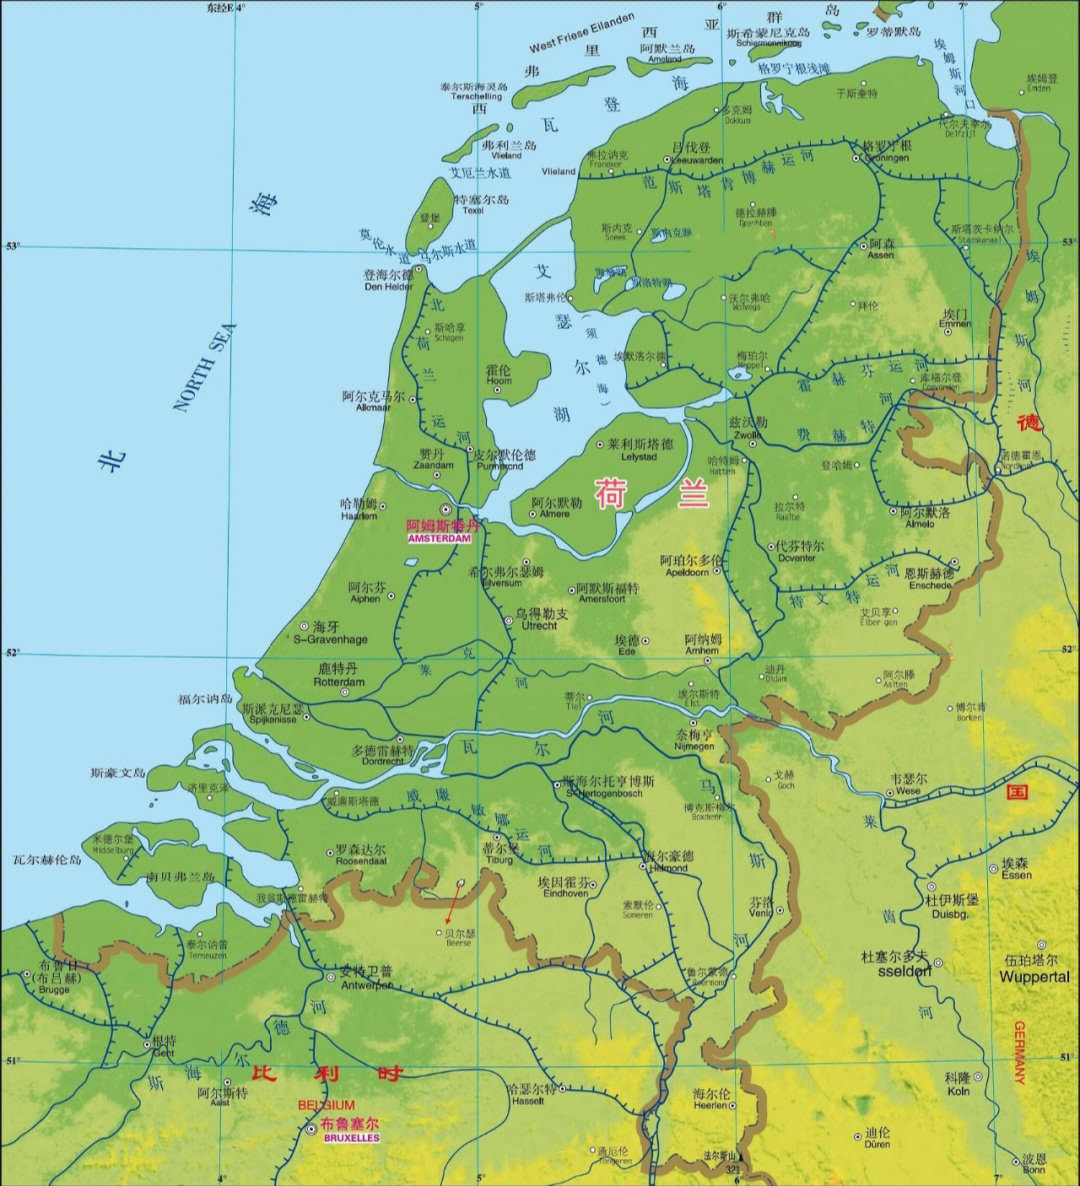 【国名】荷兰王国【首都】阿姆斯特丹(amsterdam)【位置】欧洲西部